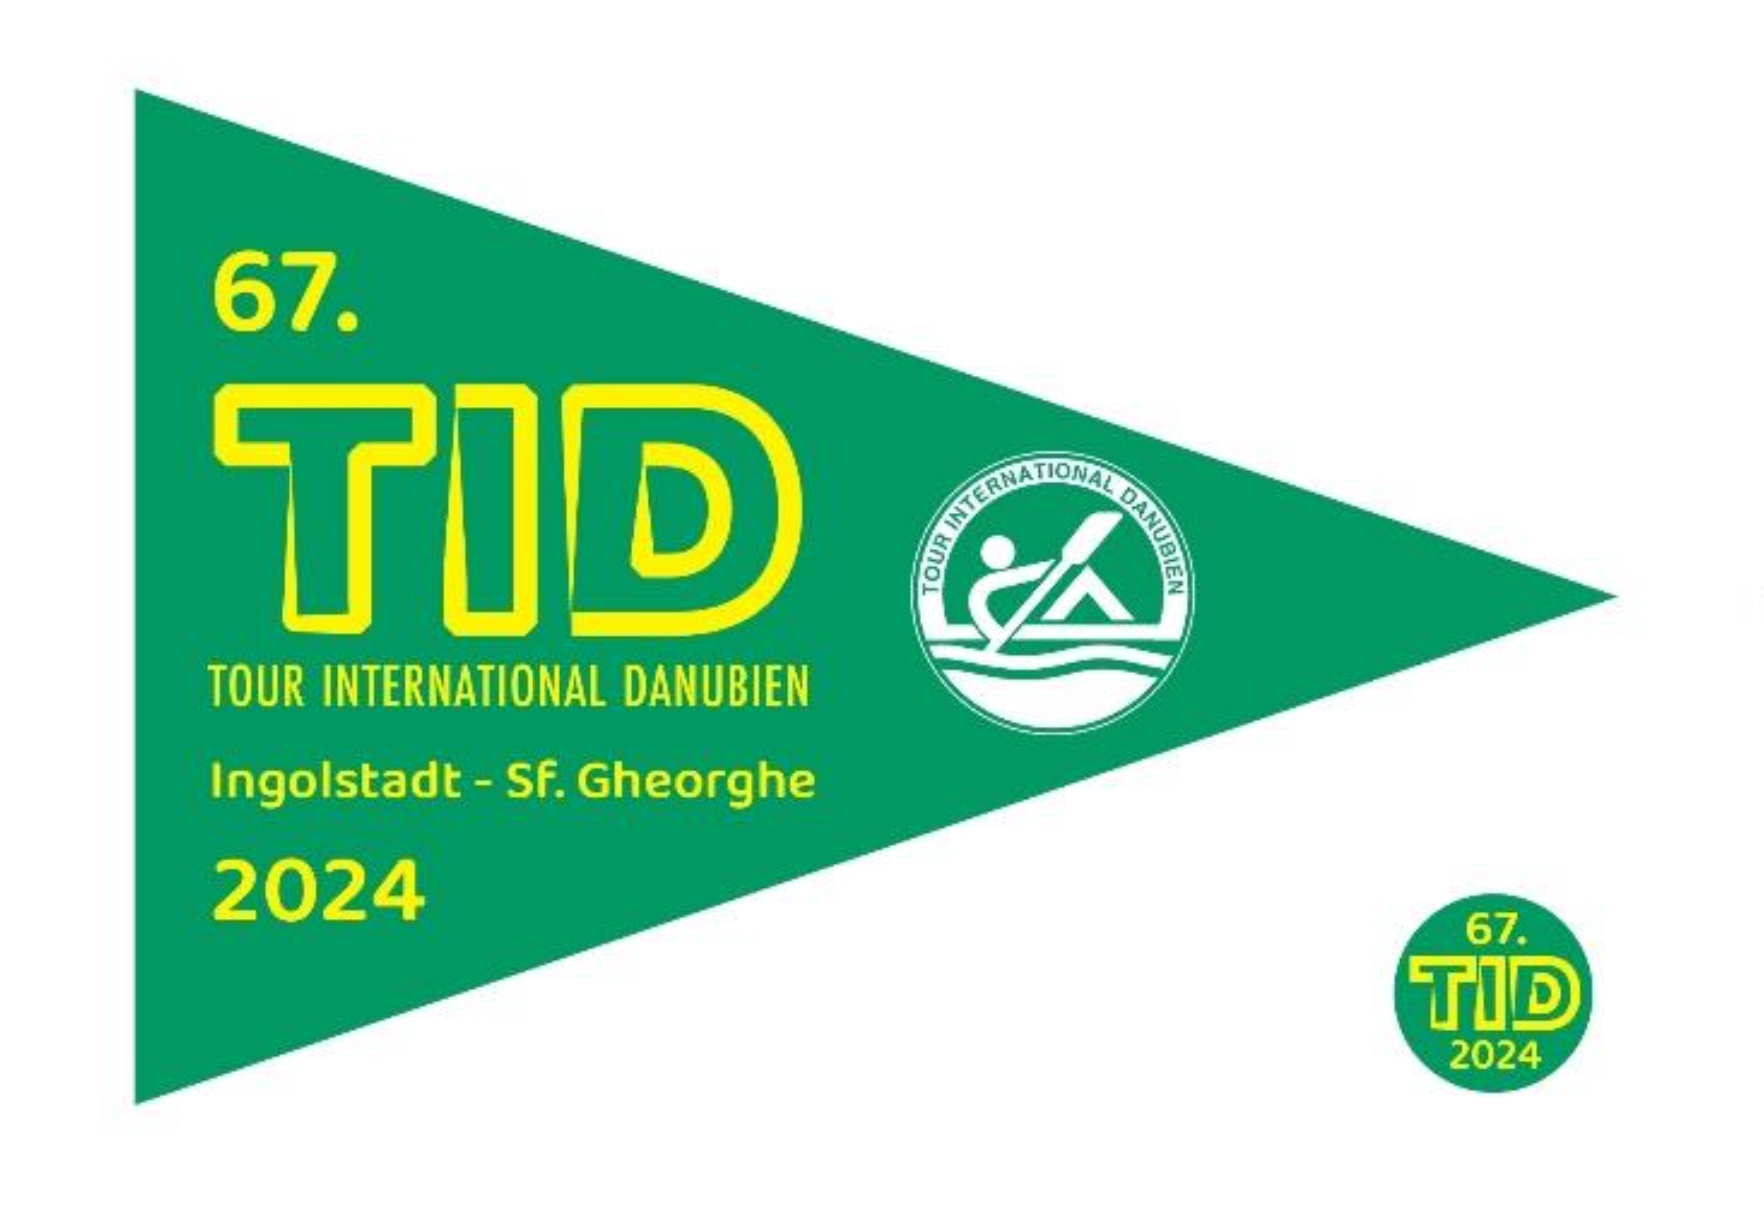 Foto: Emblem TID 2024